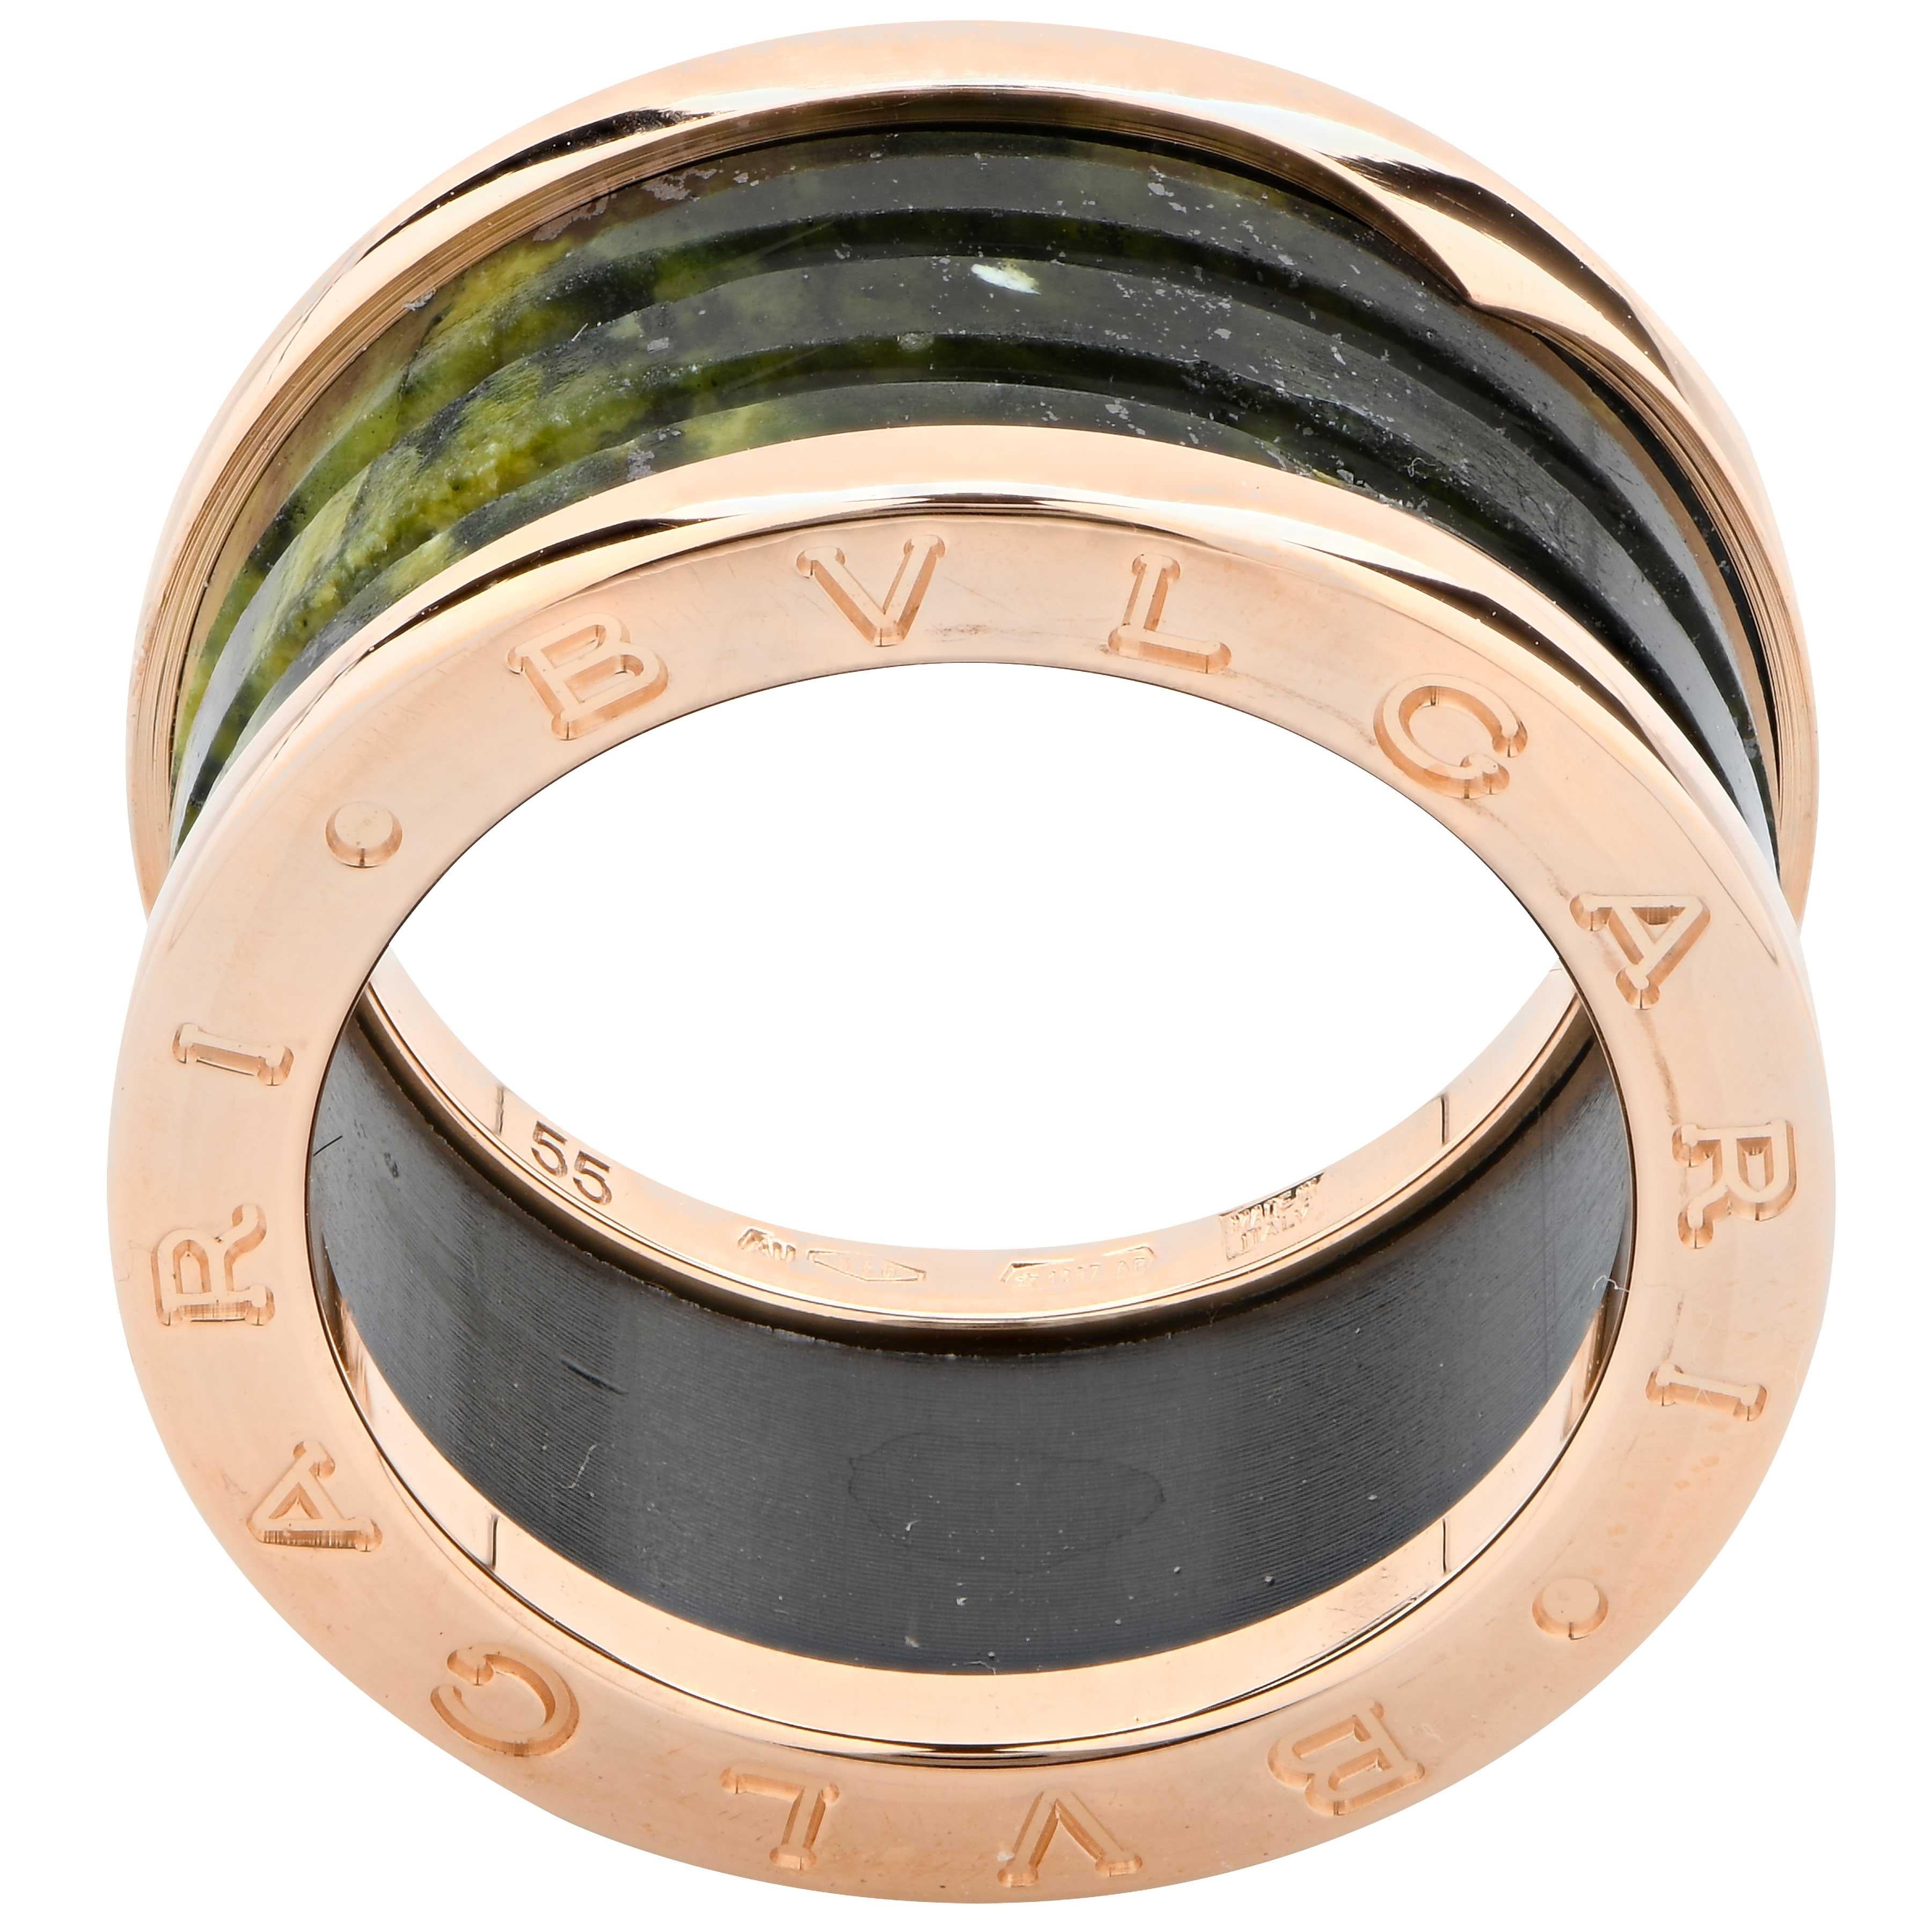 Bugari B.Zero Marble and18 Karat Rose Gold Ring.
Ring Size: 7 (Cannot Be Sized)
Metal: Rose Gold
Metal Weight: 8.1 grams
